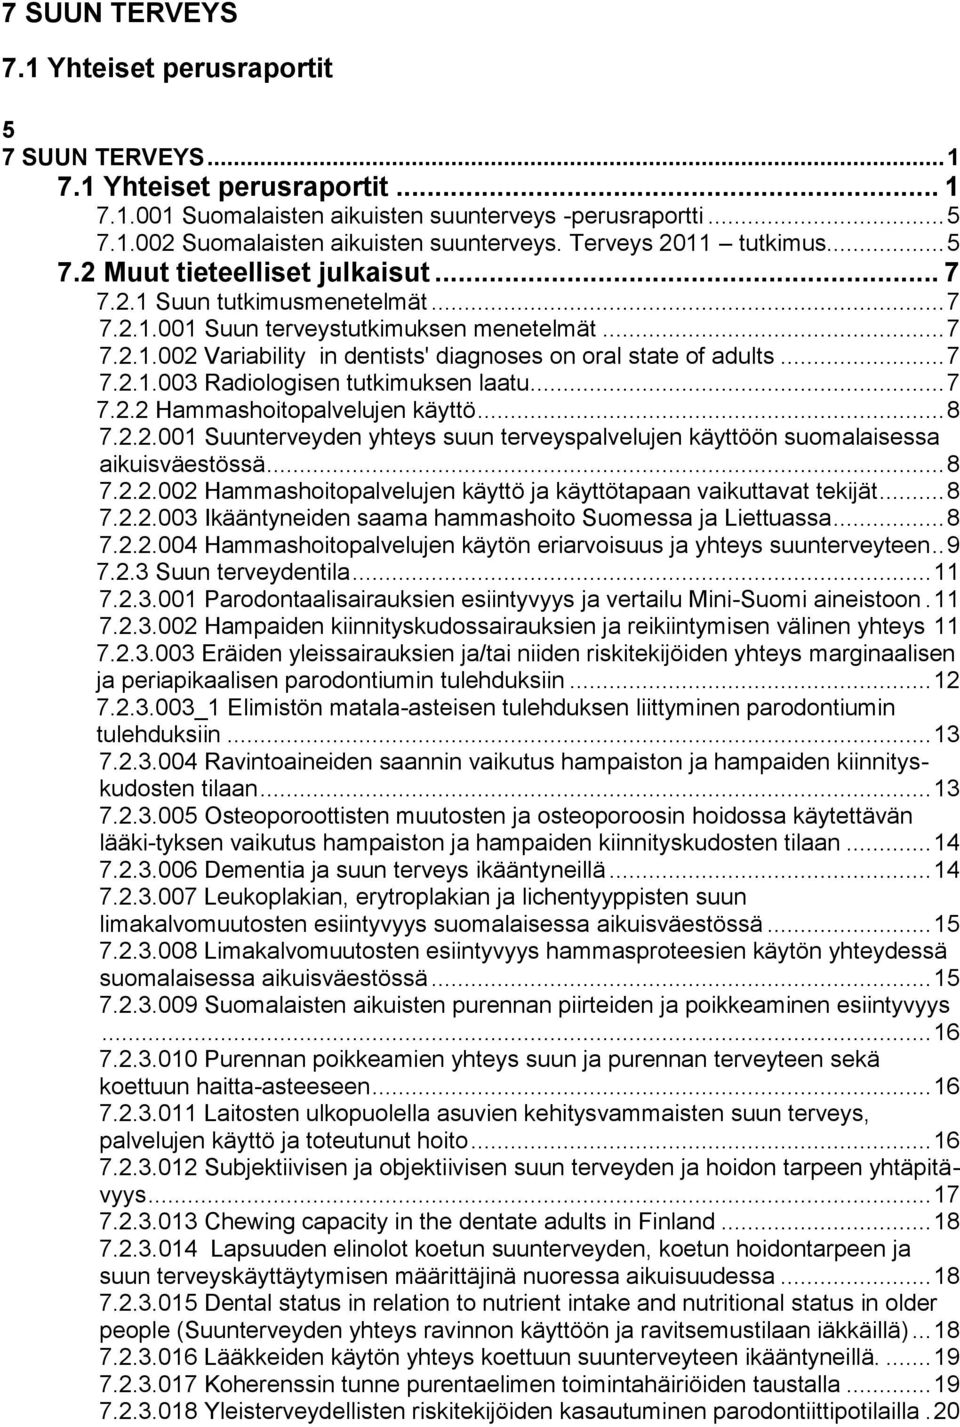 .. 7 7.2.1.003 Radiologisen tutkimuksen laatu... 7 7.2.2 Hammashoitopalvelujen käyttö... 8 7.2.2.001 Suunterveyden yhteys suun terveyspalvelujen käyttöön suomalaisessa aikuisväestössä... 8 7.2.2.002 Hammashoitopalvelujen käyttö ja käyttötapaan vaikuttavat tekijät.